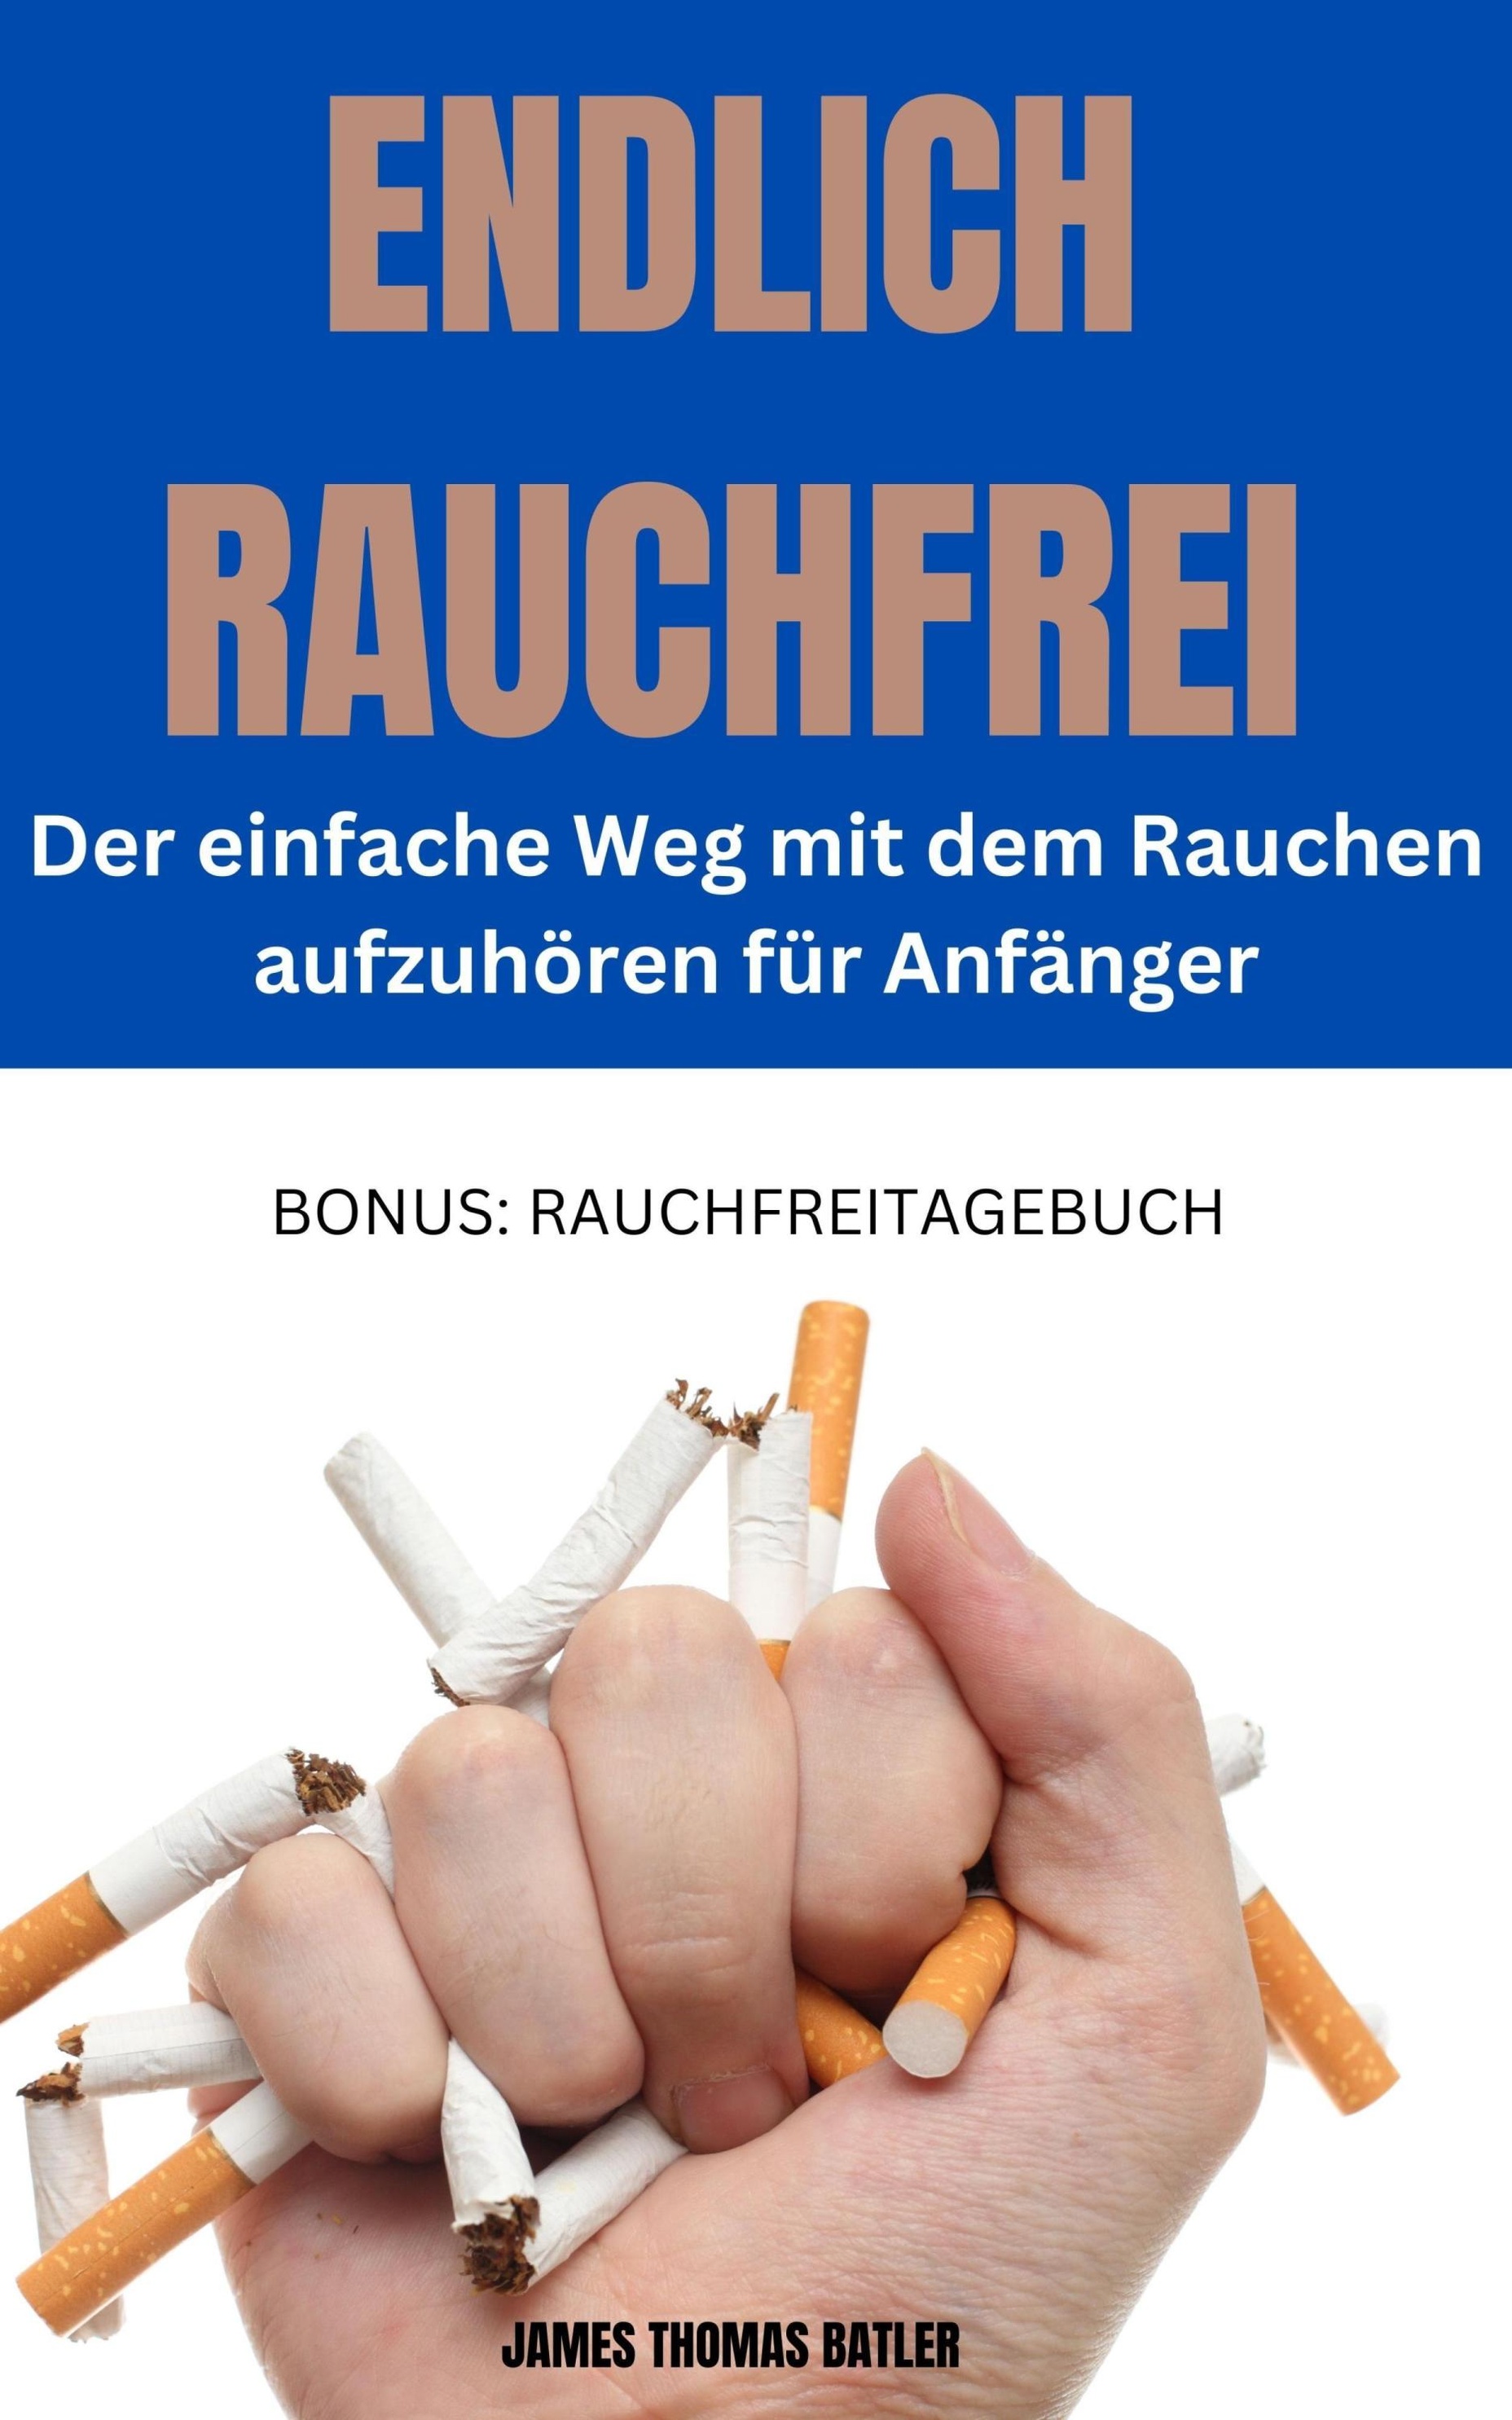 https://i.weltbild.de/p/endlich-rauchfrei-der-einfache-weg-mit-dem-rauchen-362852248.jpg?v=1&wp=_max